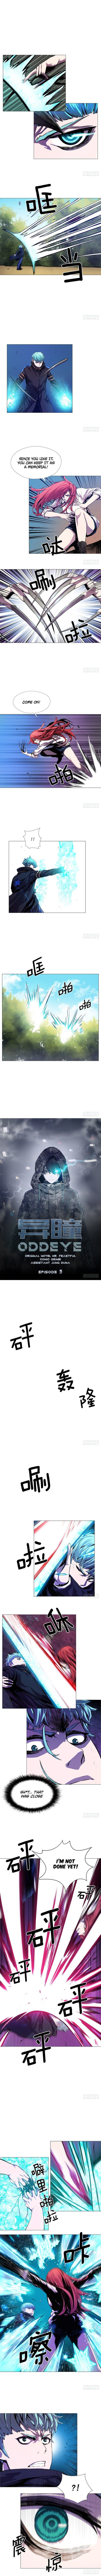 Oddeye - Page 2